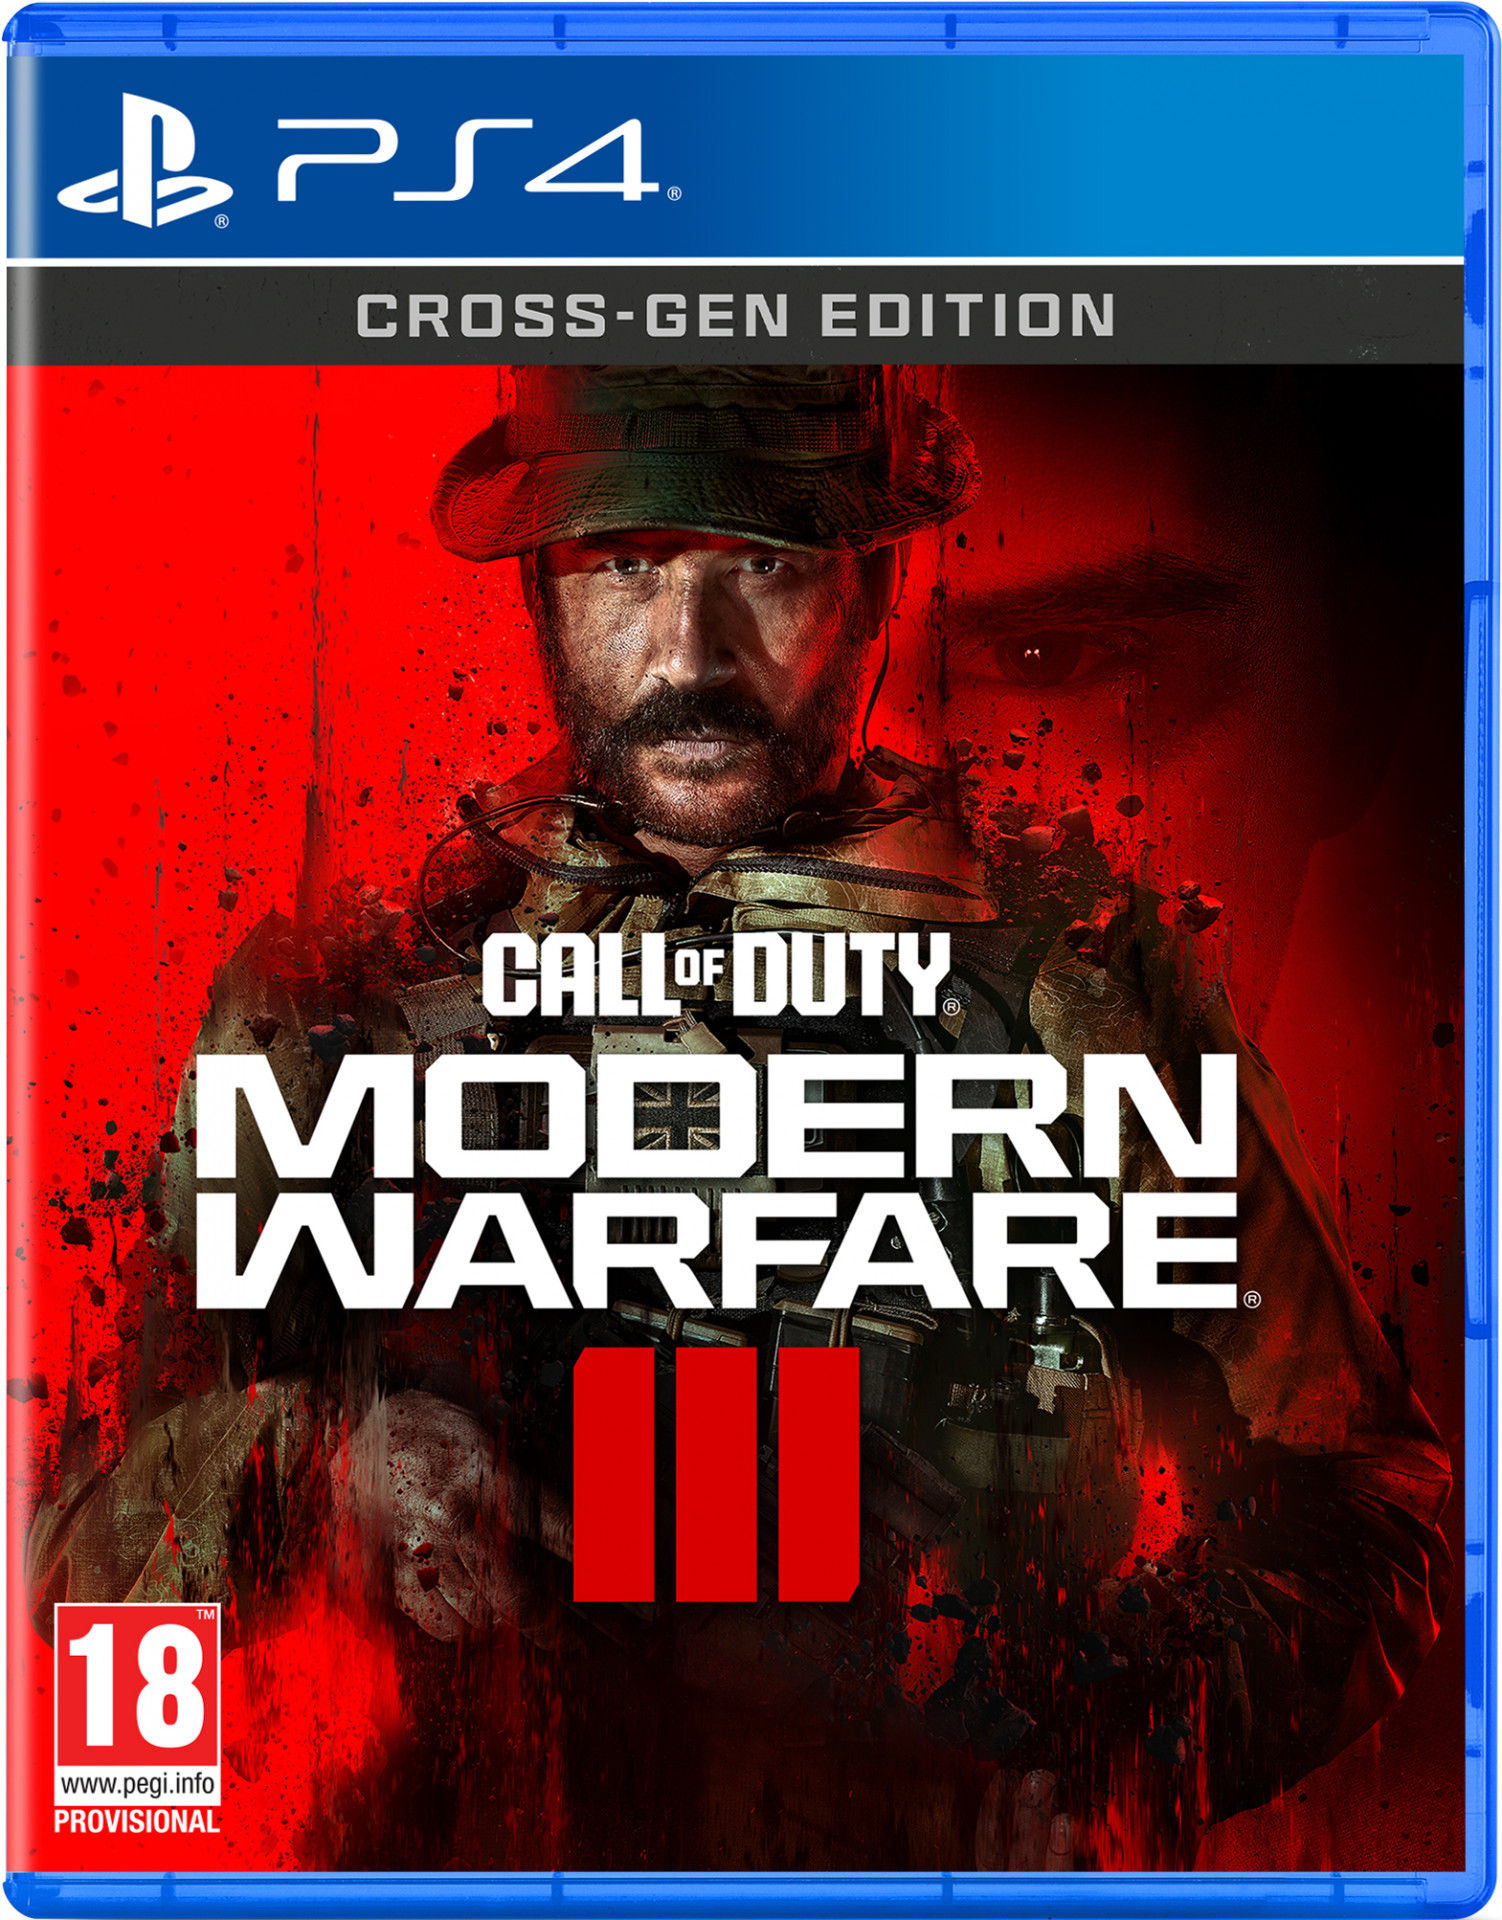 Call of Duty Modern Warfare III PlayStation 4